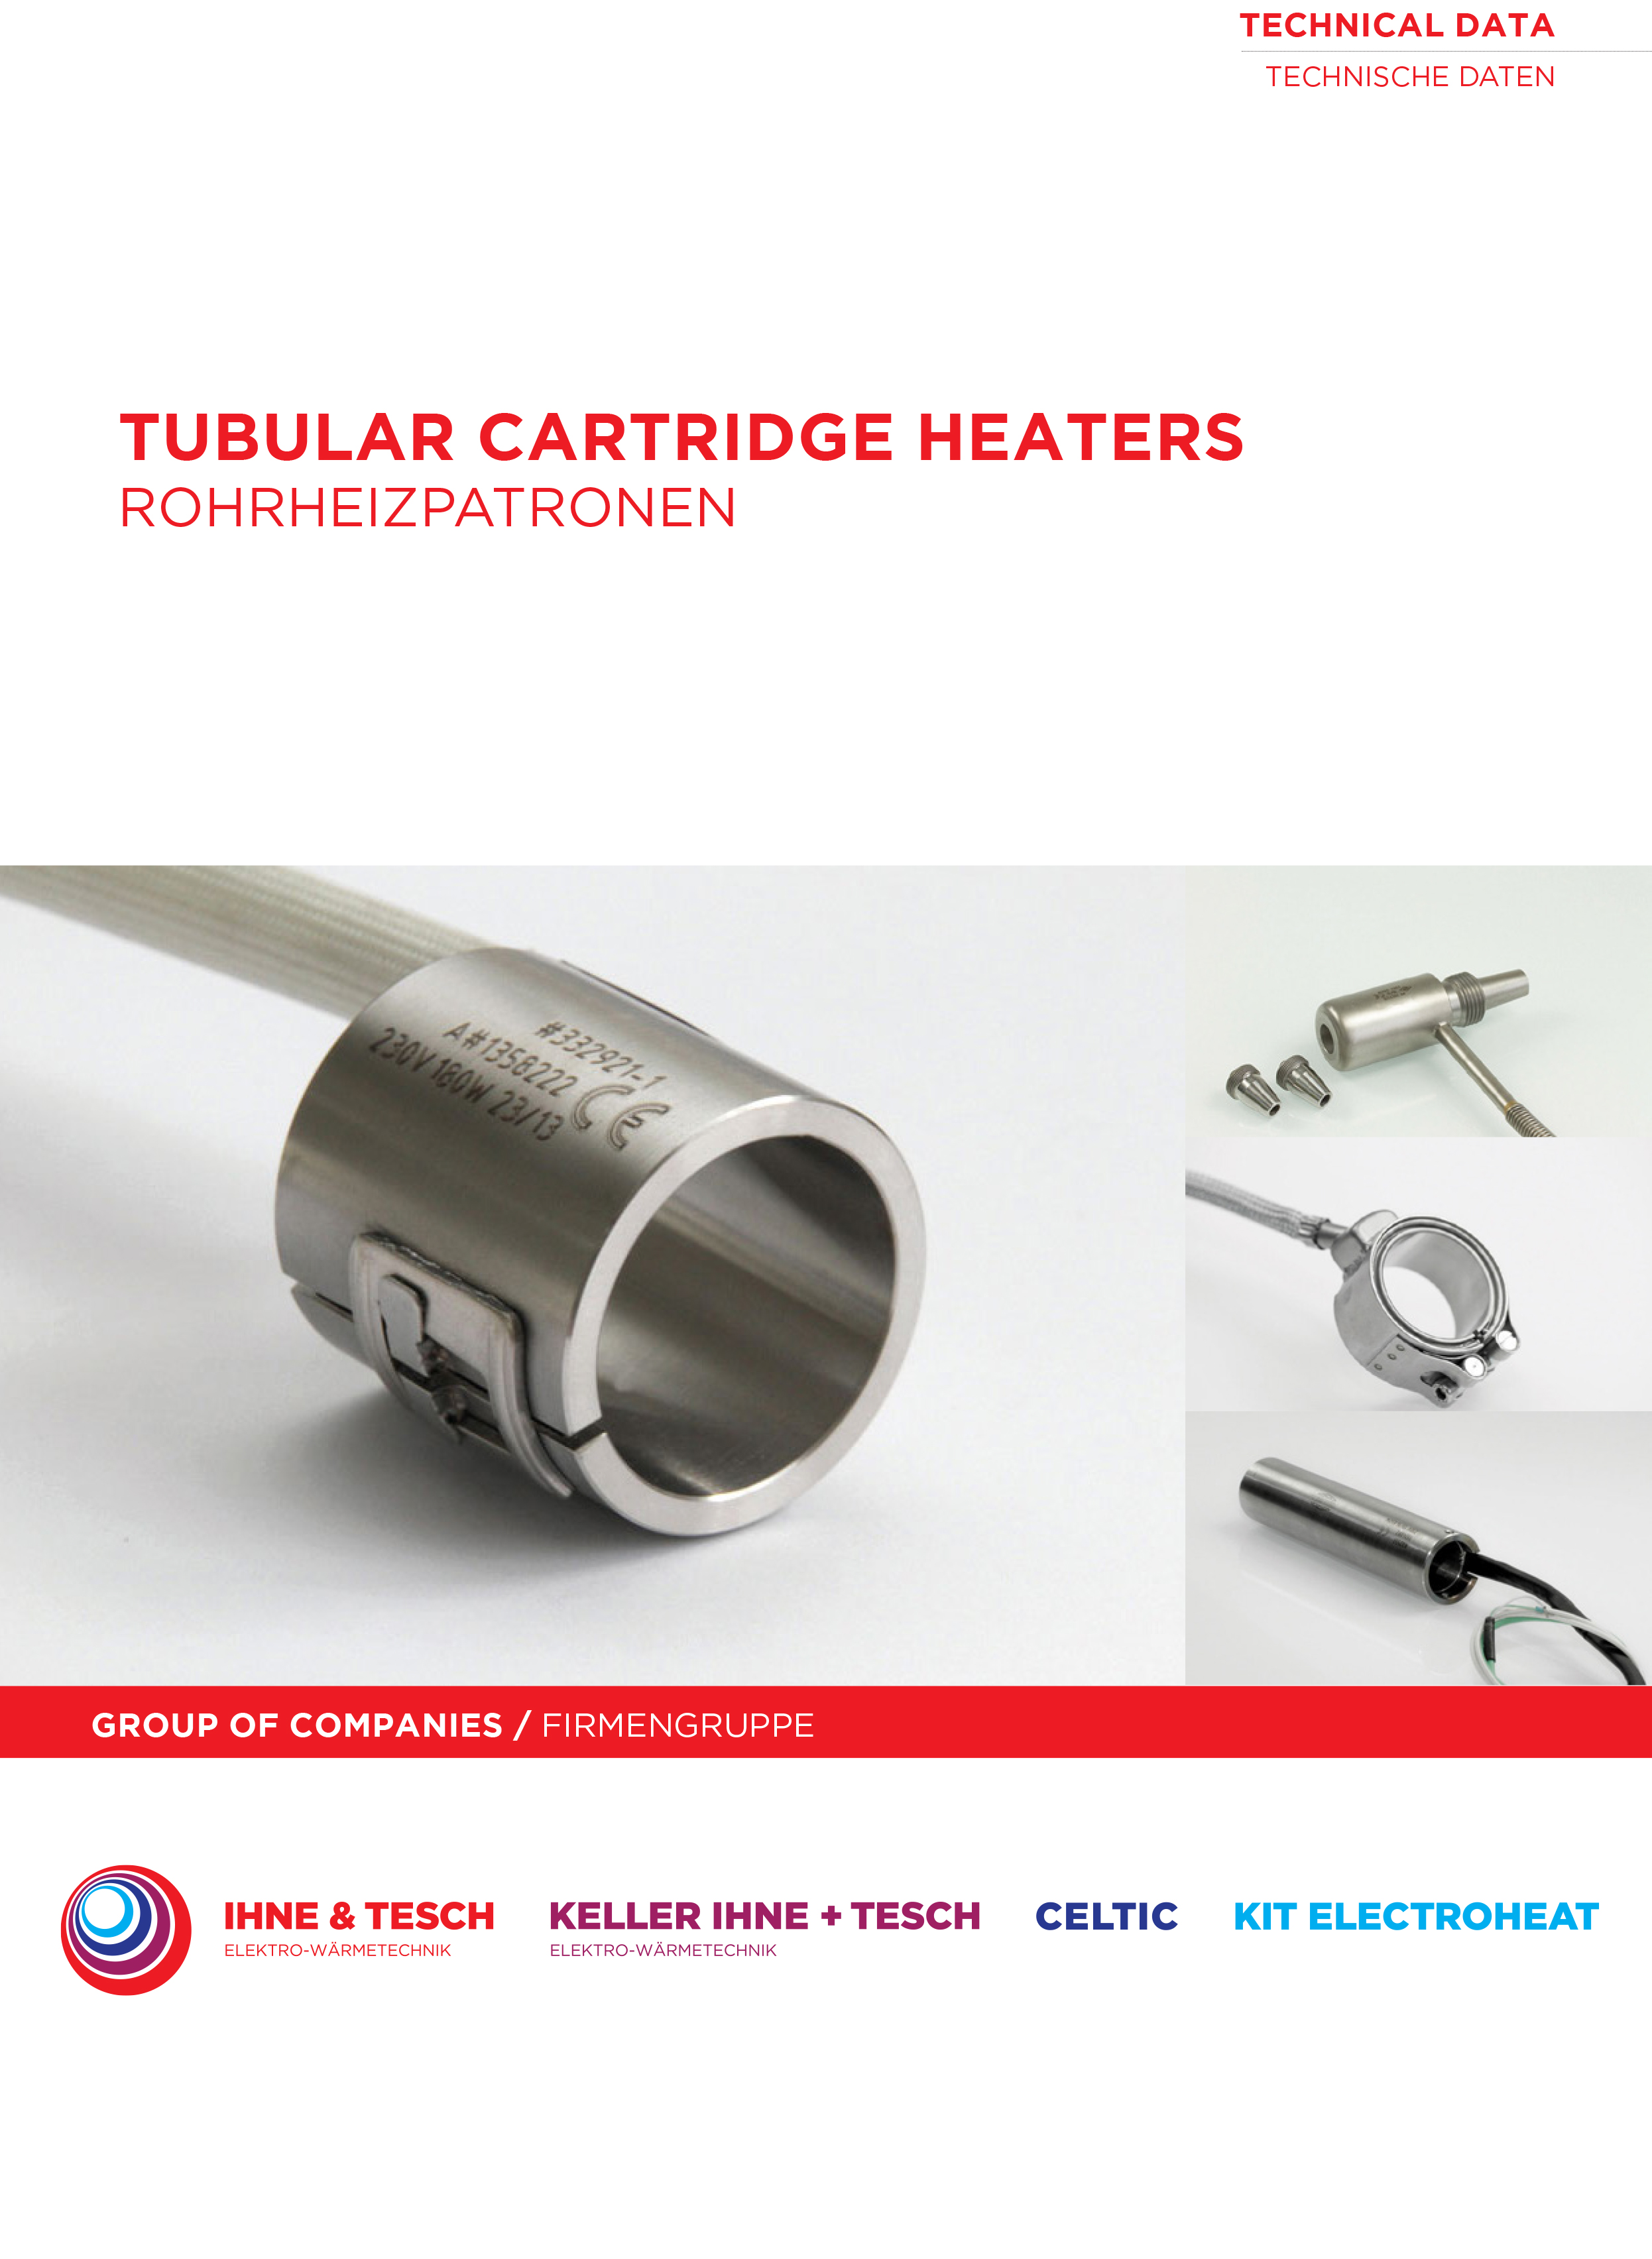 Tubular-Cartridge-Heater-technical-data